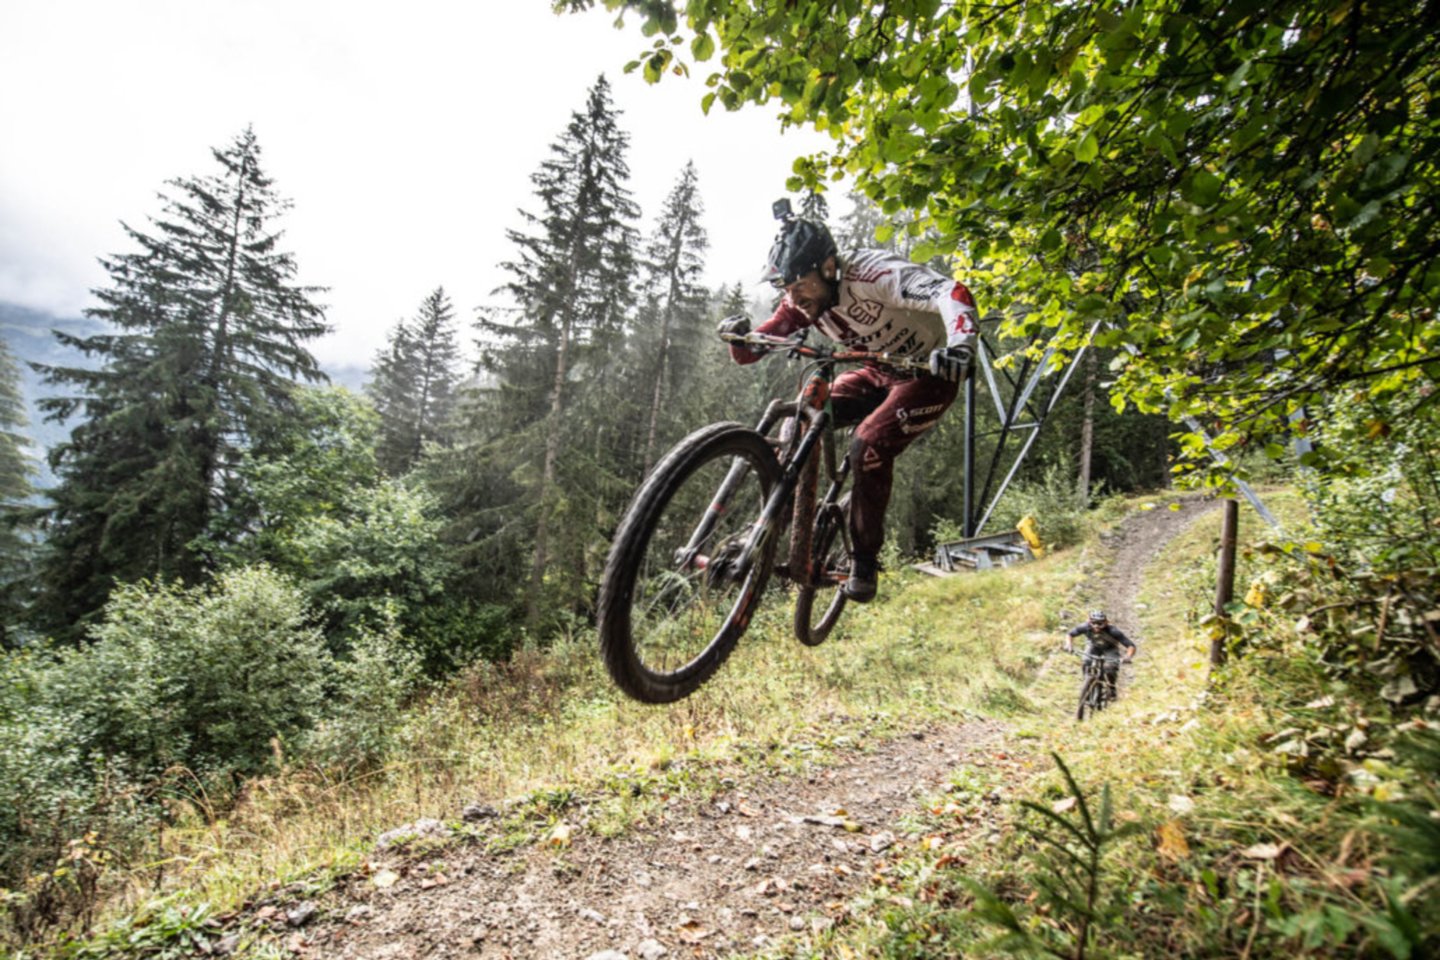 Kalnų dviračių trasa bus įrengta greta Joninių slėnio.<br>velosolutions.com nuotr.